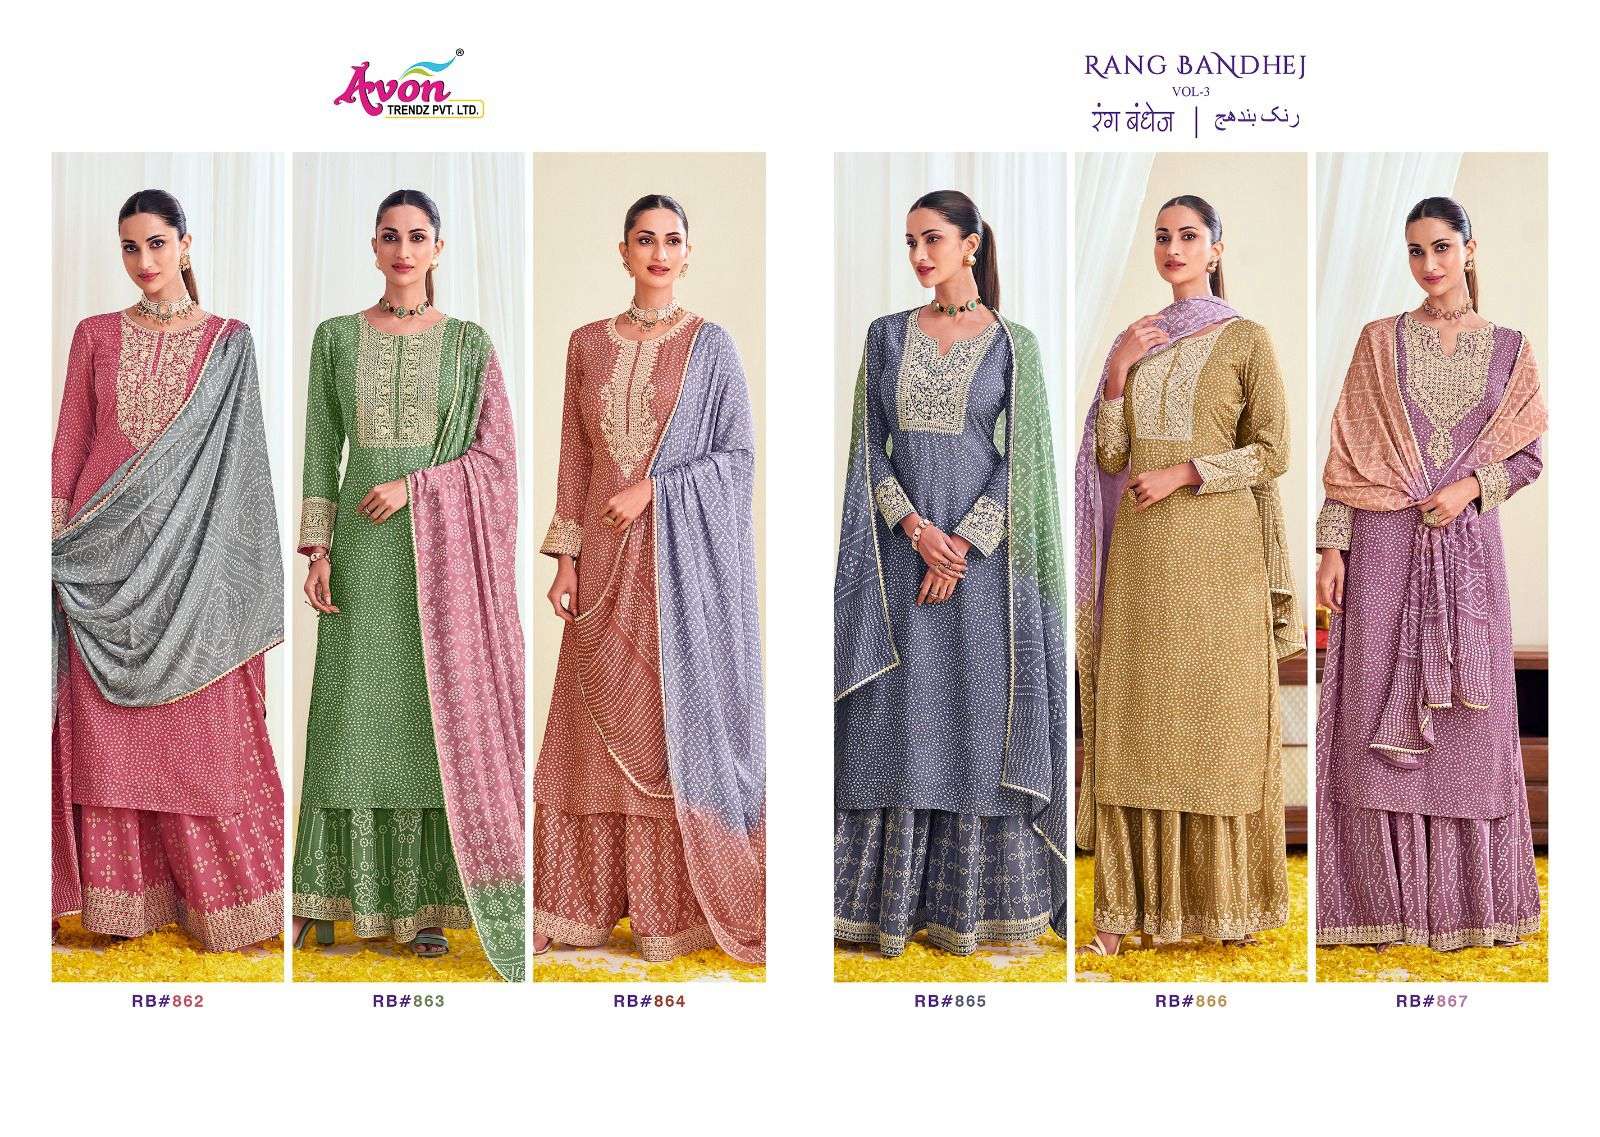 avon trendz rang bandhej 862-867 series latest designer sharara salwar kameez wholesaler surat gujarat